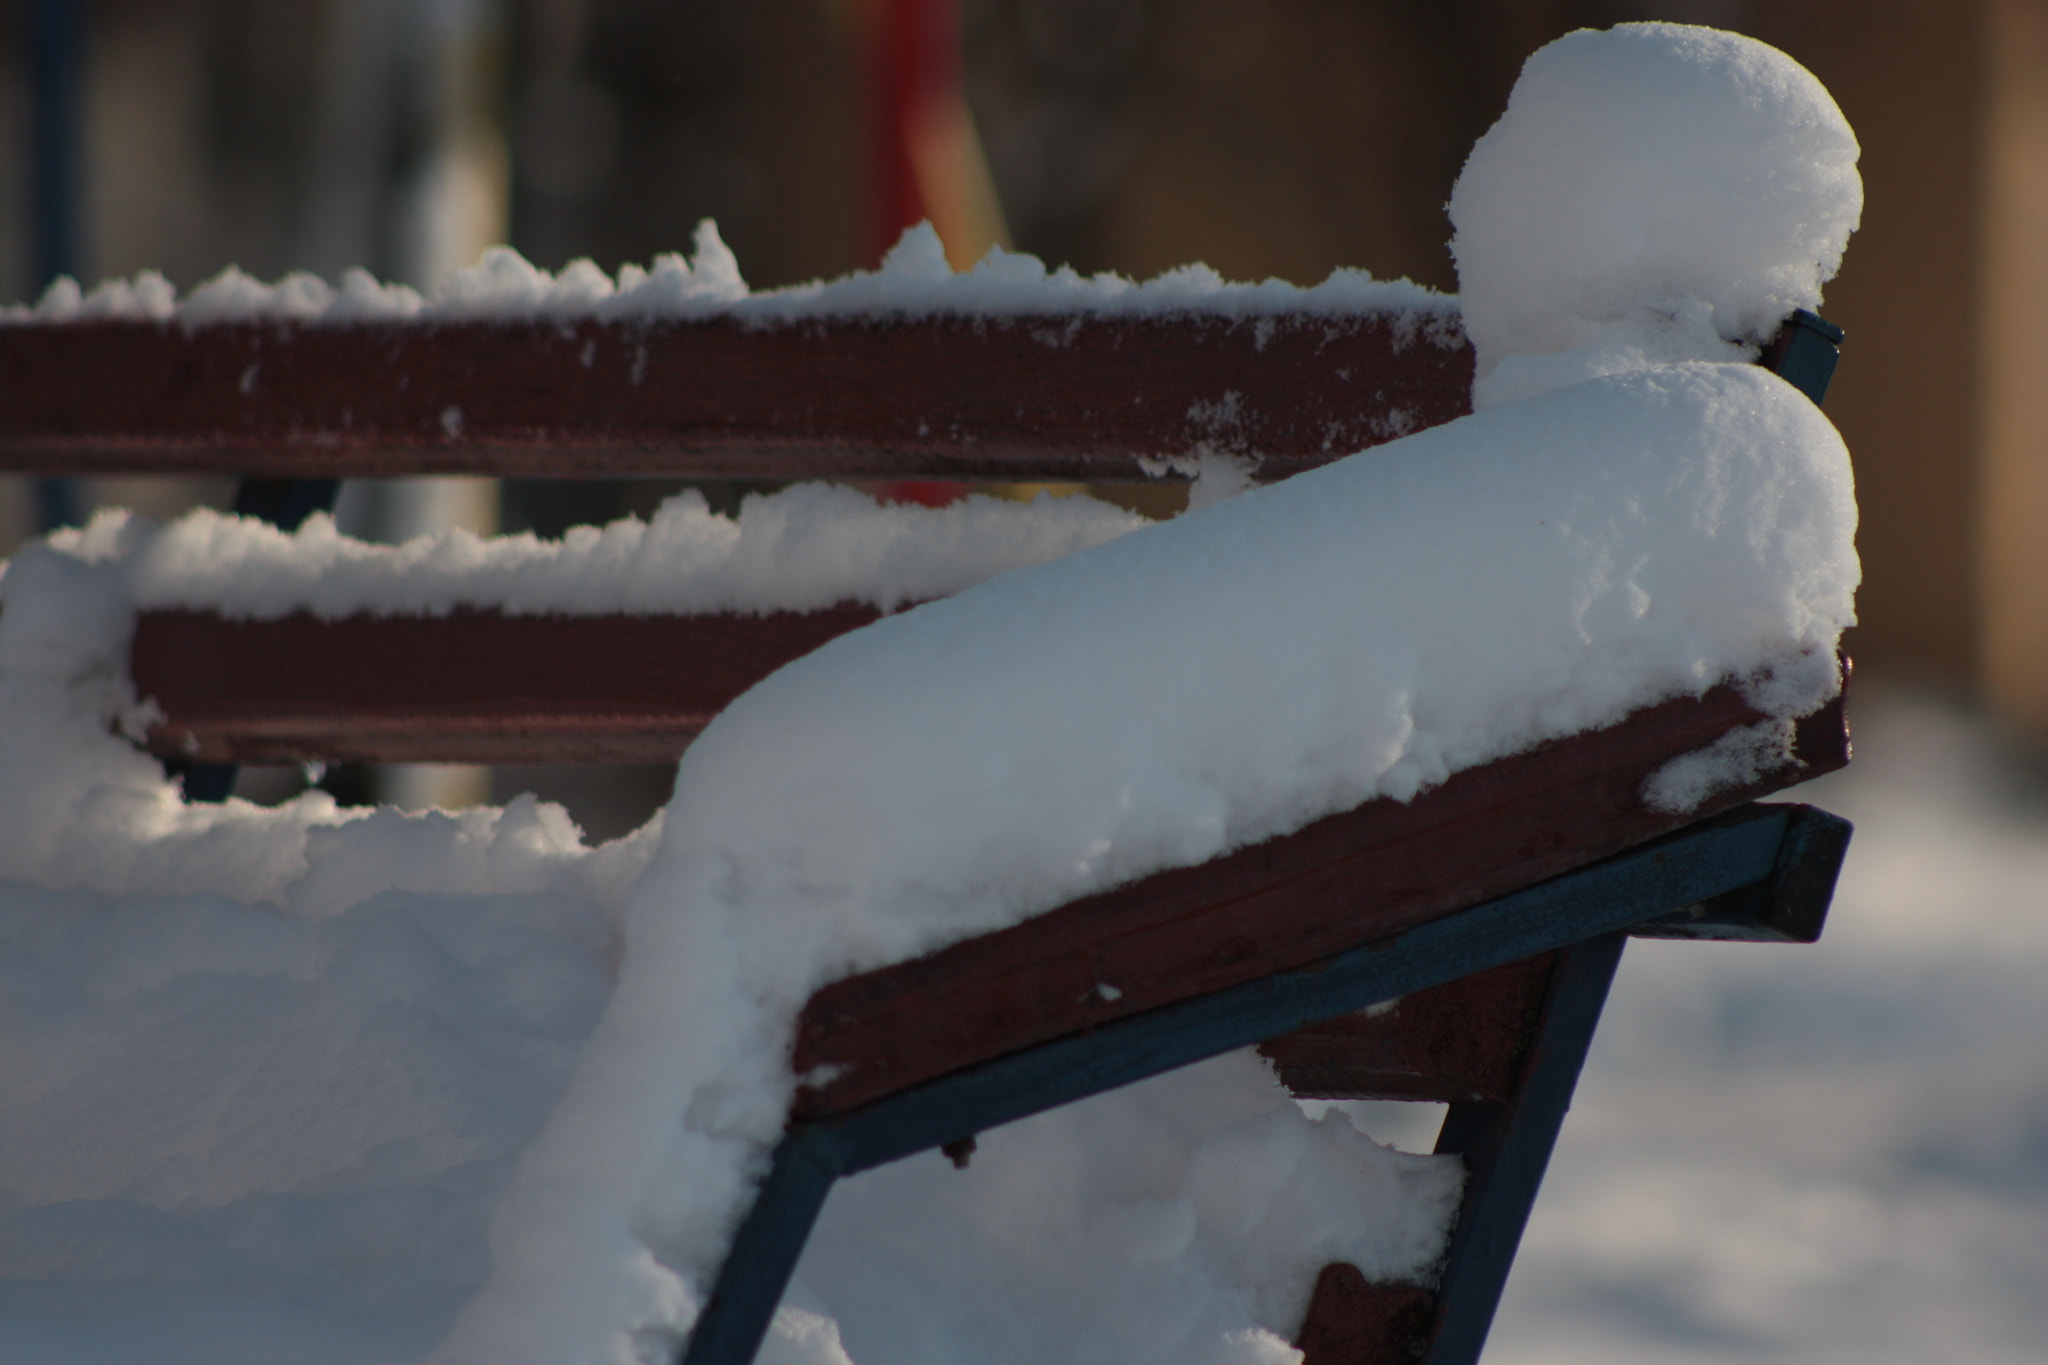 Canon EOS 450D (EOS Rebel XSi / EOS Kiss X2) sample photo. Snow on the garden bench photography